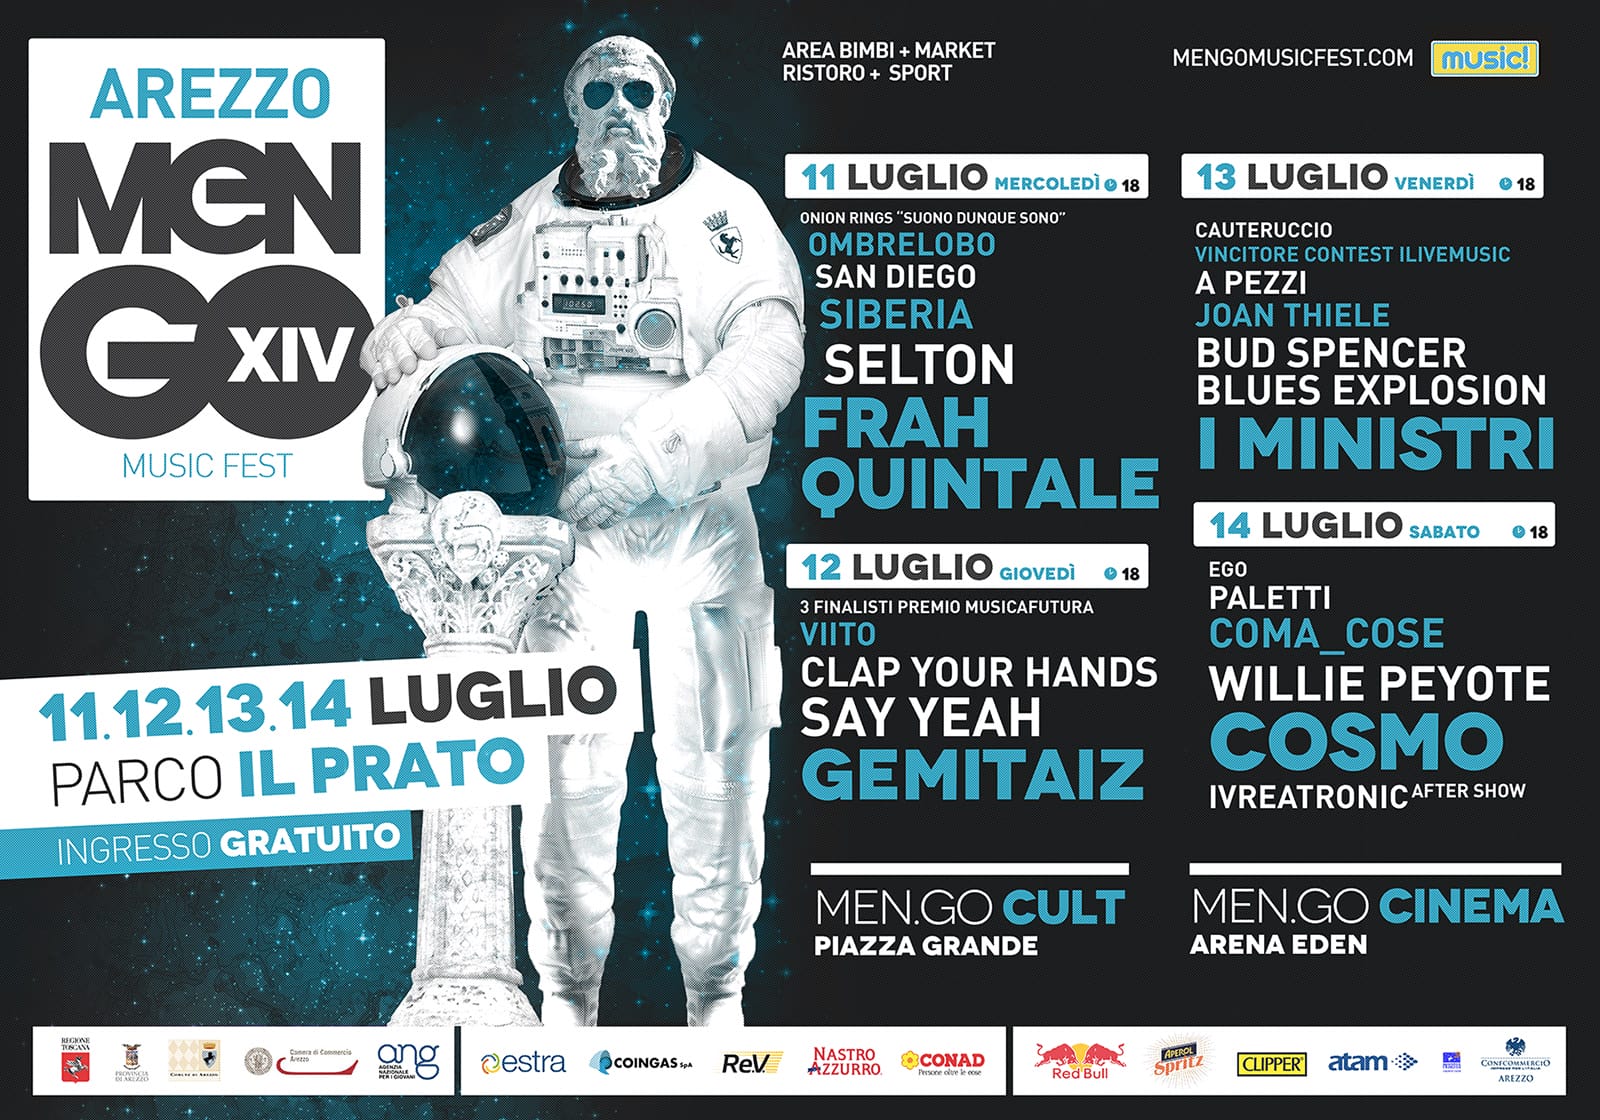 Men/go Festival dall’11 al 14 luglio ad Arezzo